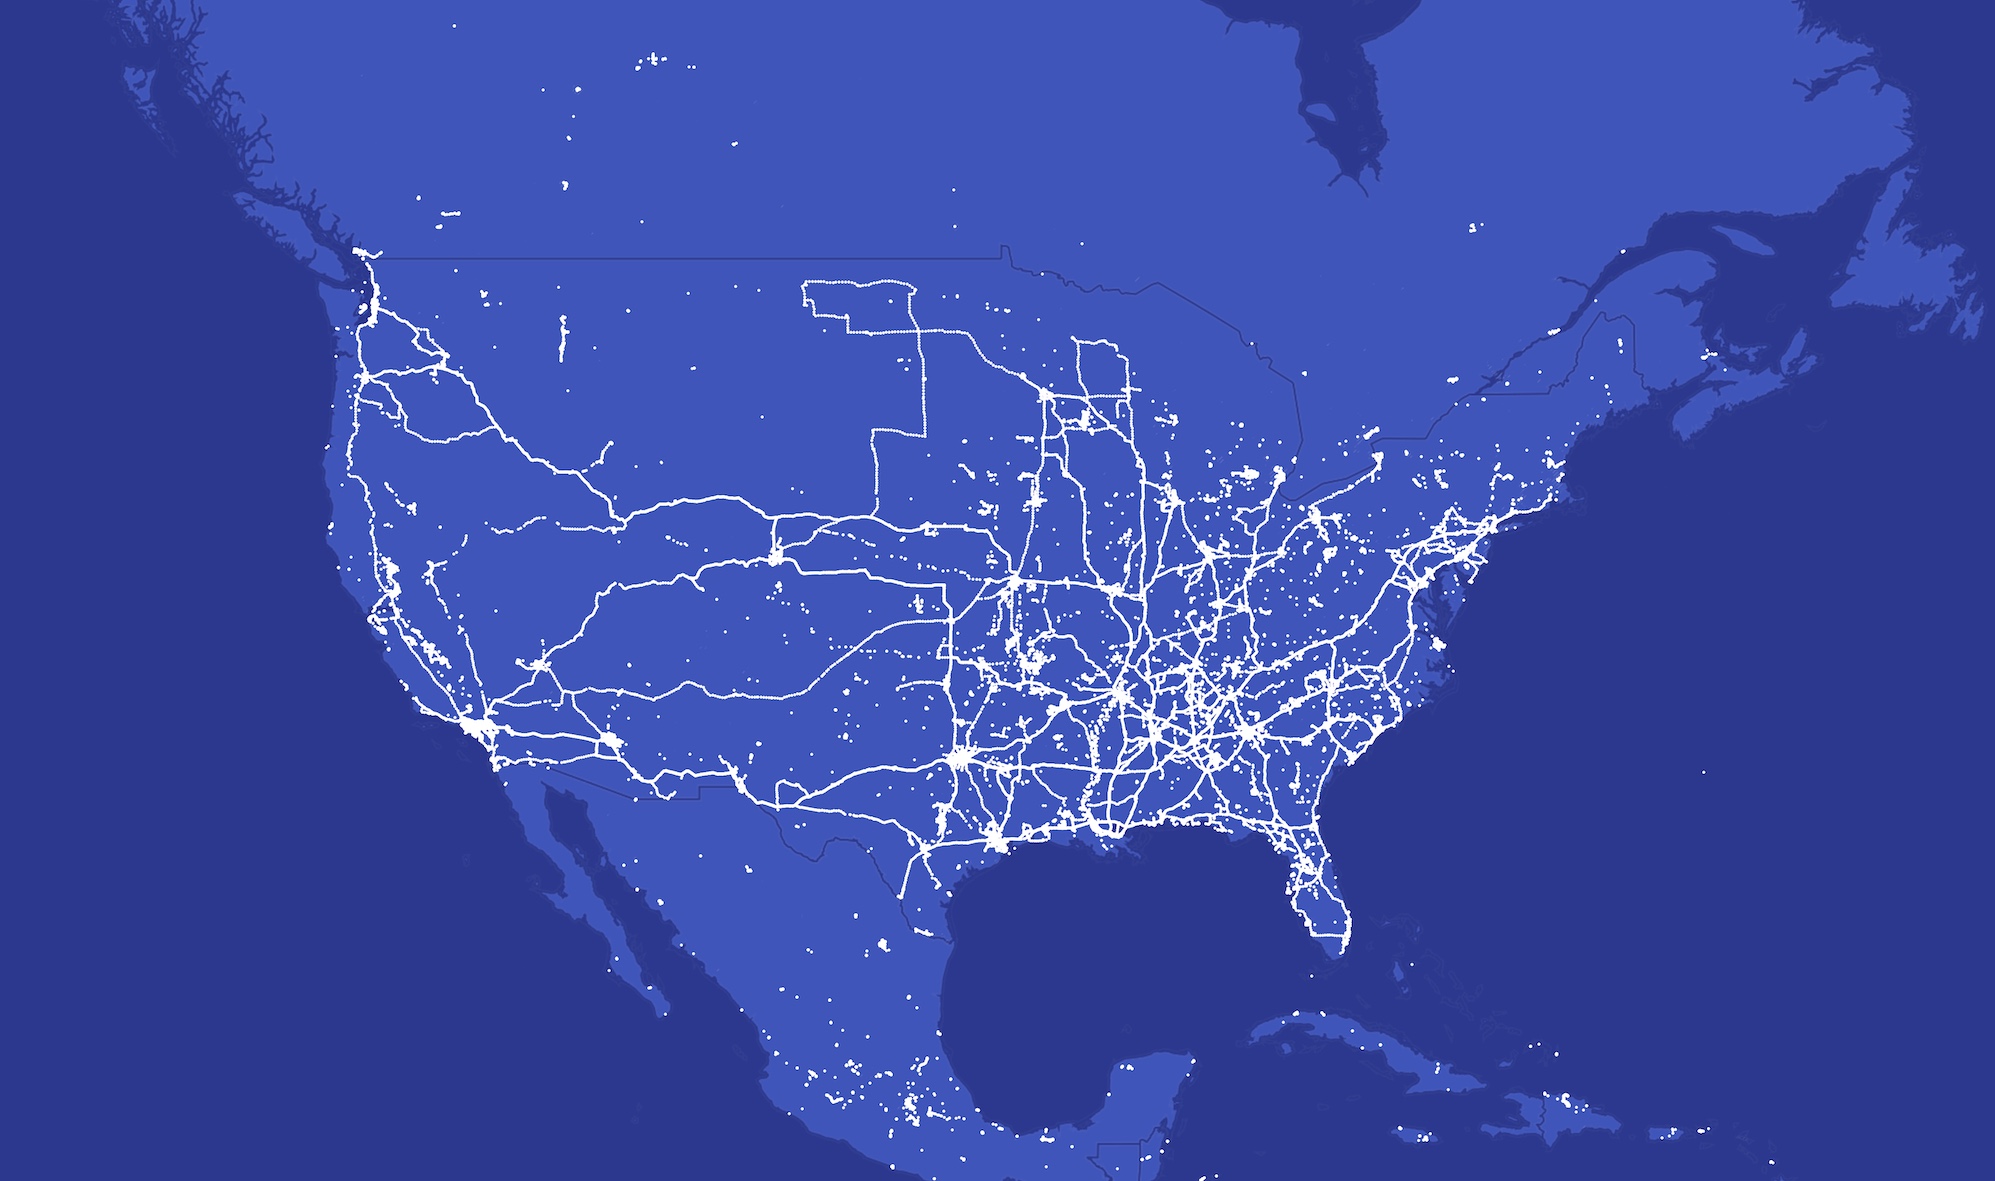 Amerika Birleşik Devletleri'nin mavi haritasında görselleştirilen milyonlarca konum verisi noktası